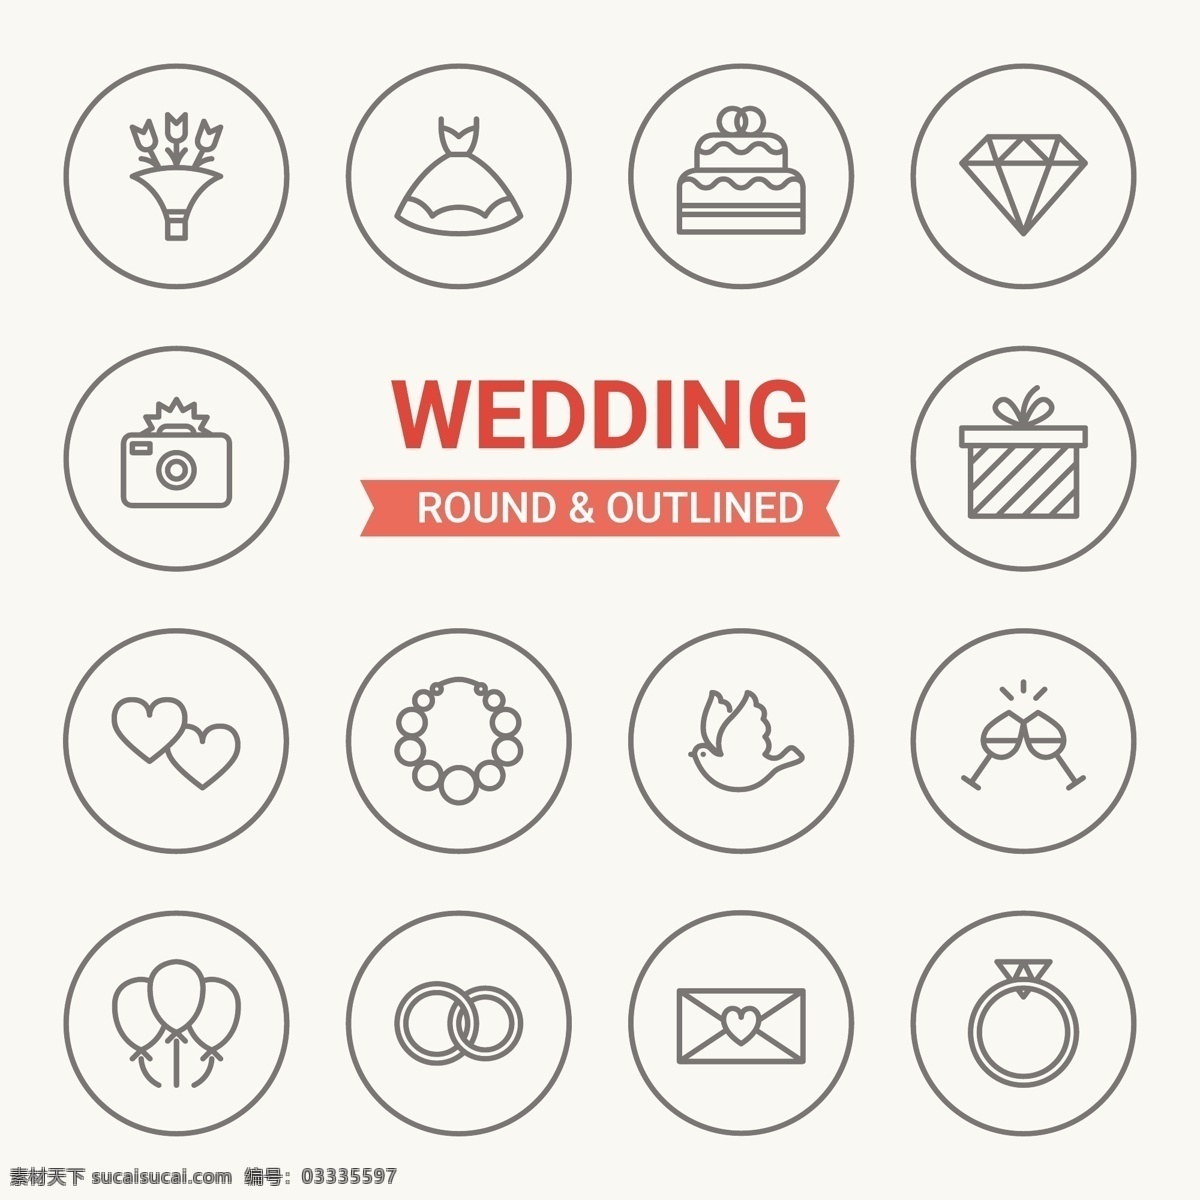 圆环 婚礼 按钮 图标 模板下载 婚礼图标 结婚按钮图标 商务图标 icon 图标设计 标签 请帖请柬 矢量素材